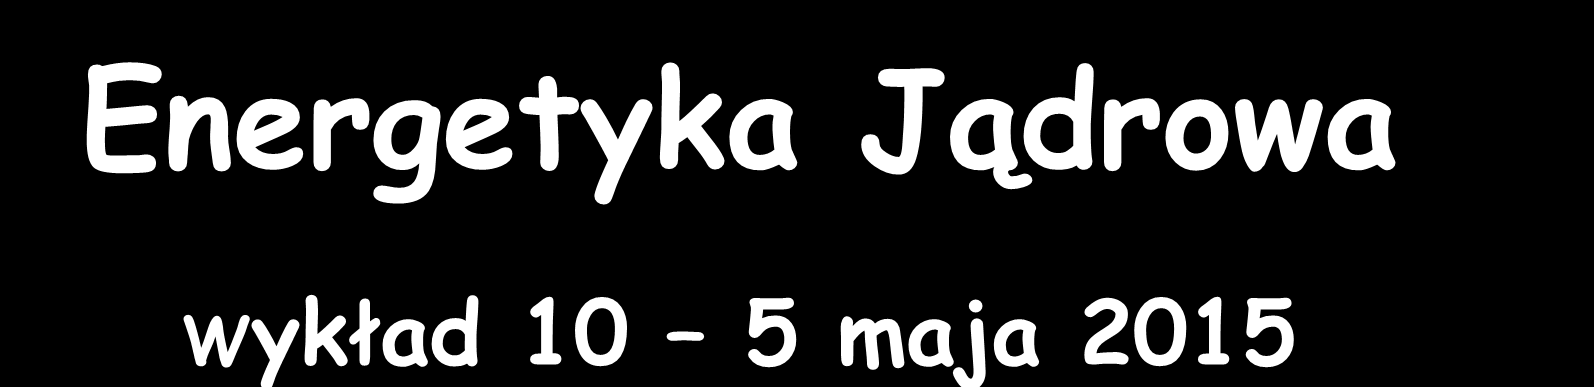 Energetyka Jądrowa Wykład 10 5 maja 2015 Zygmunt Szefliński Środowiskowe